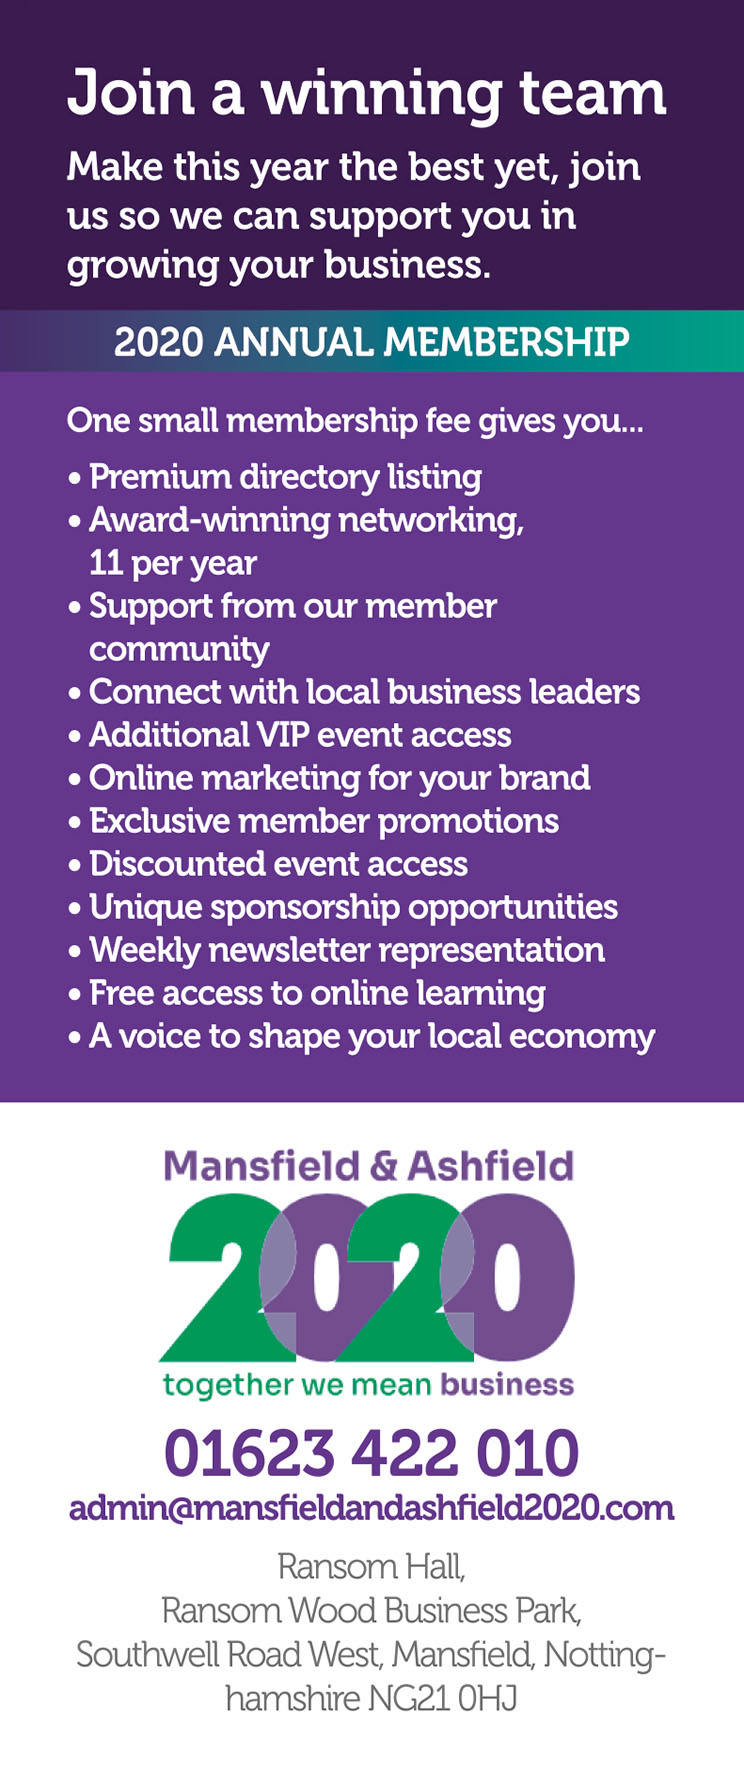 Mansfield & Ashfield 2020